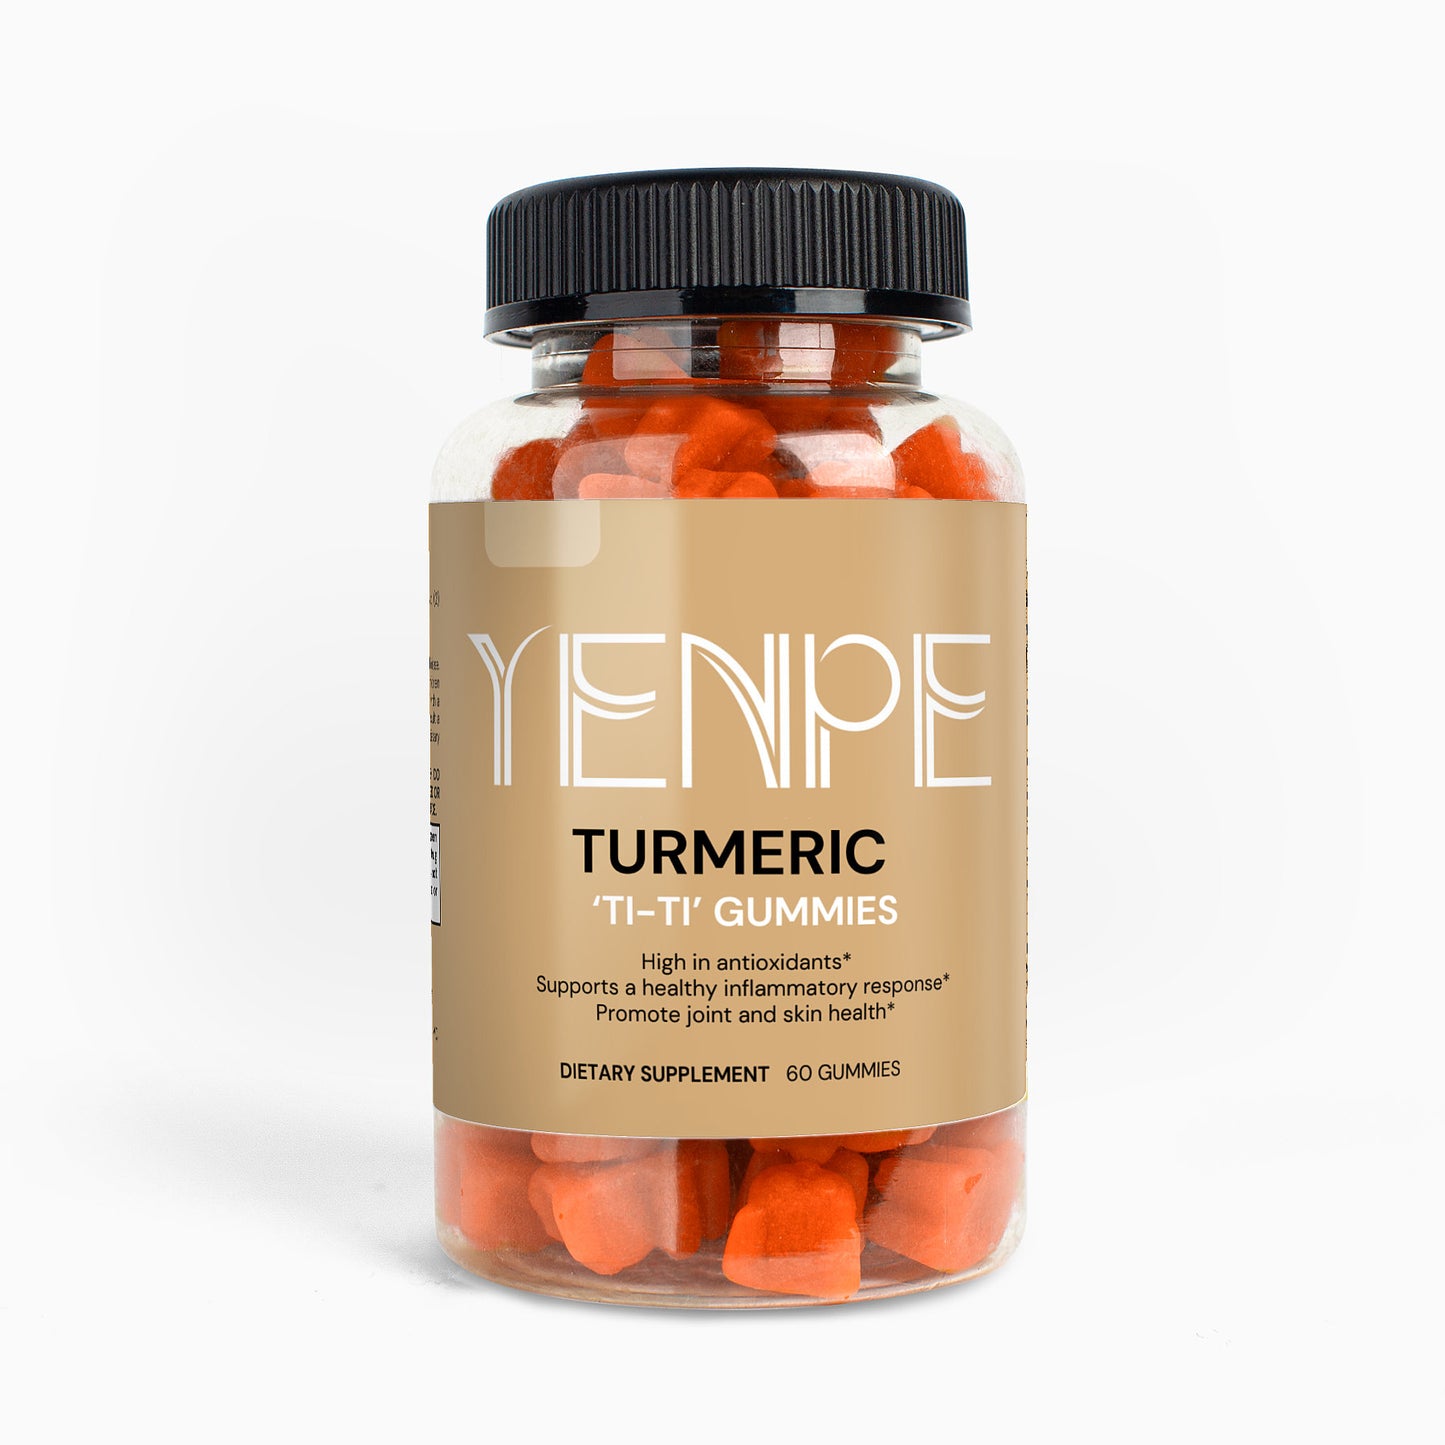 Turmeric TI-TI Gummies